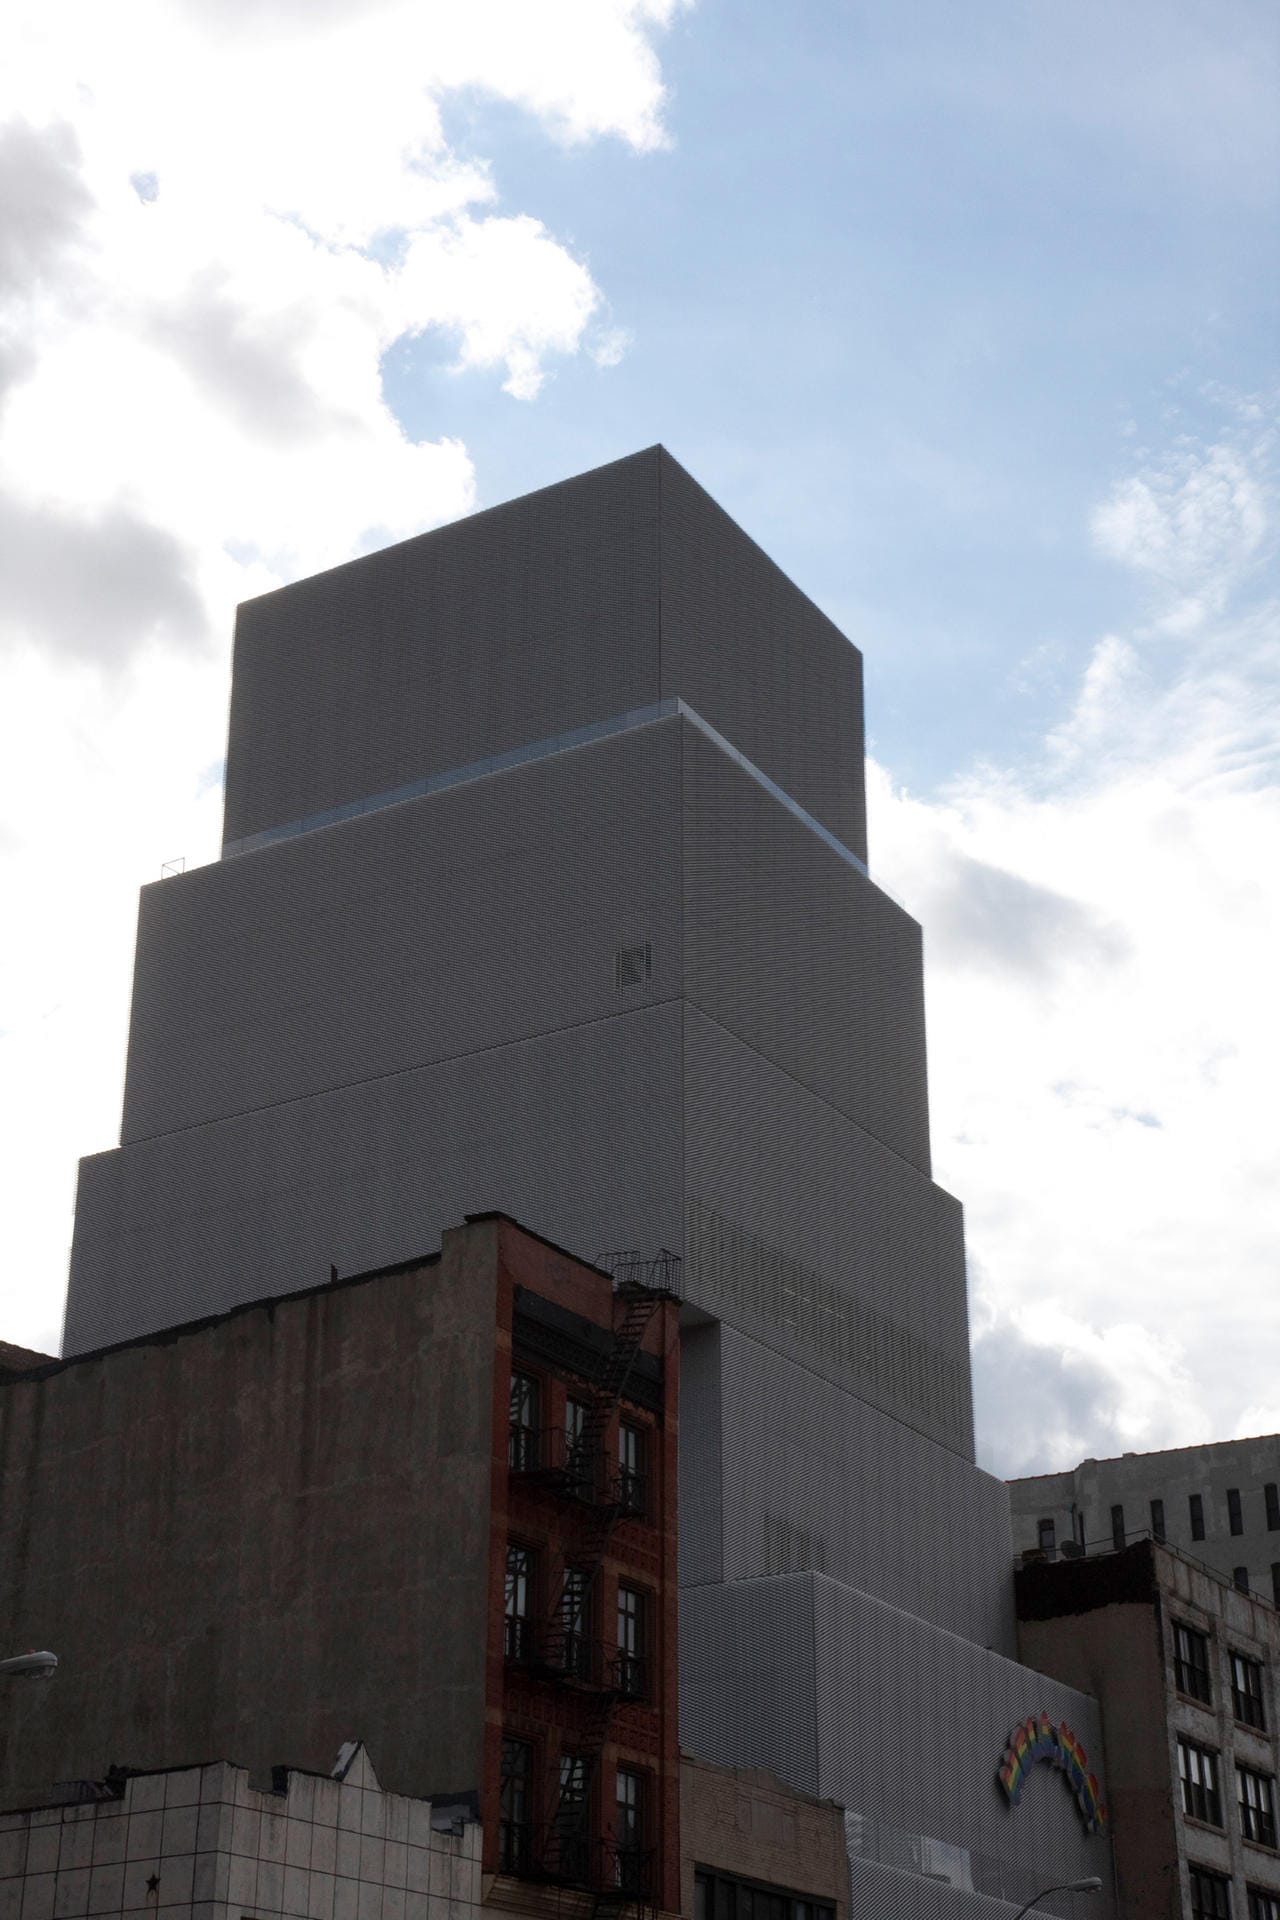 Das New Museum in New York besteht seit 1977. Im Jahr 2007 wurde der von Kazuyo Sejima und Ryue Nishizawa entworfene Neubau eröffnet.